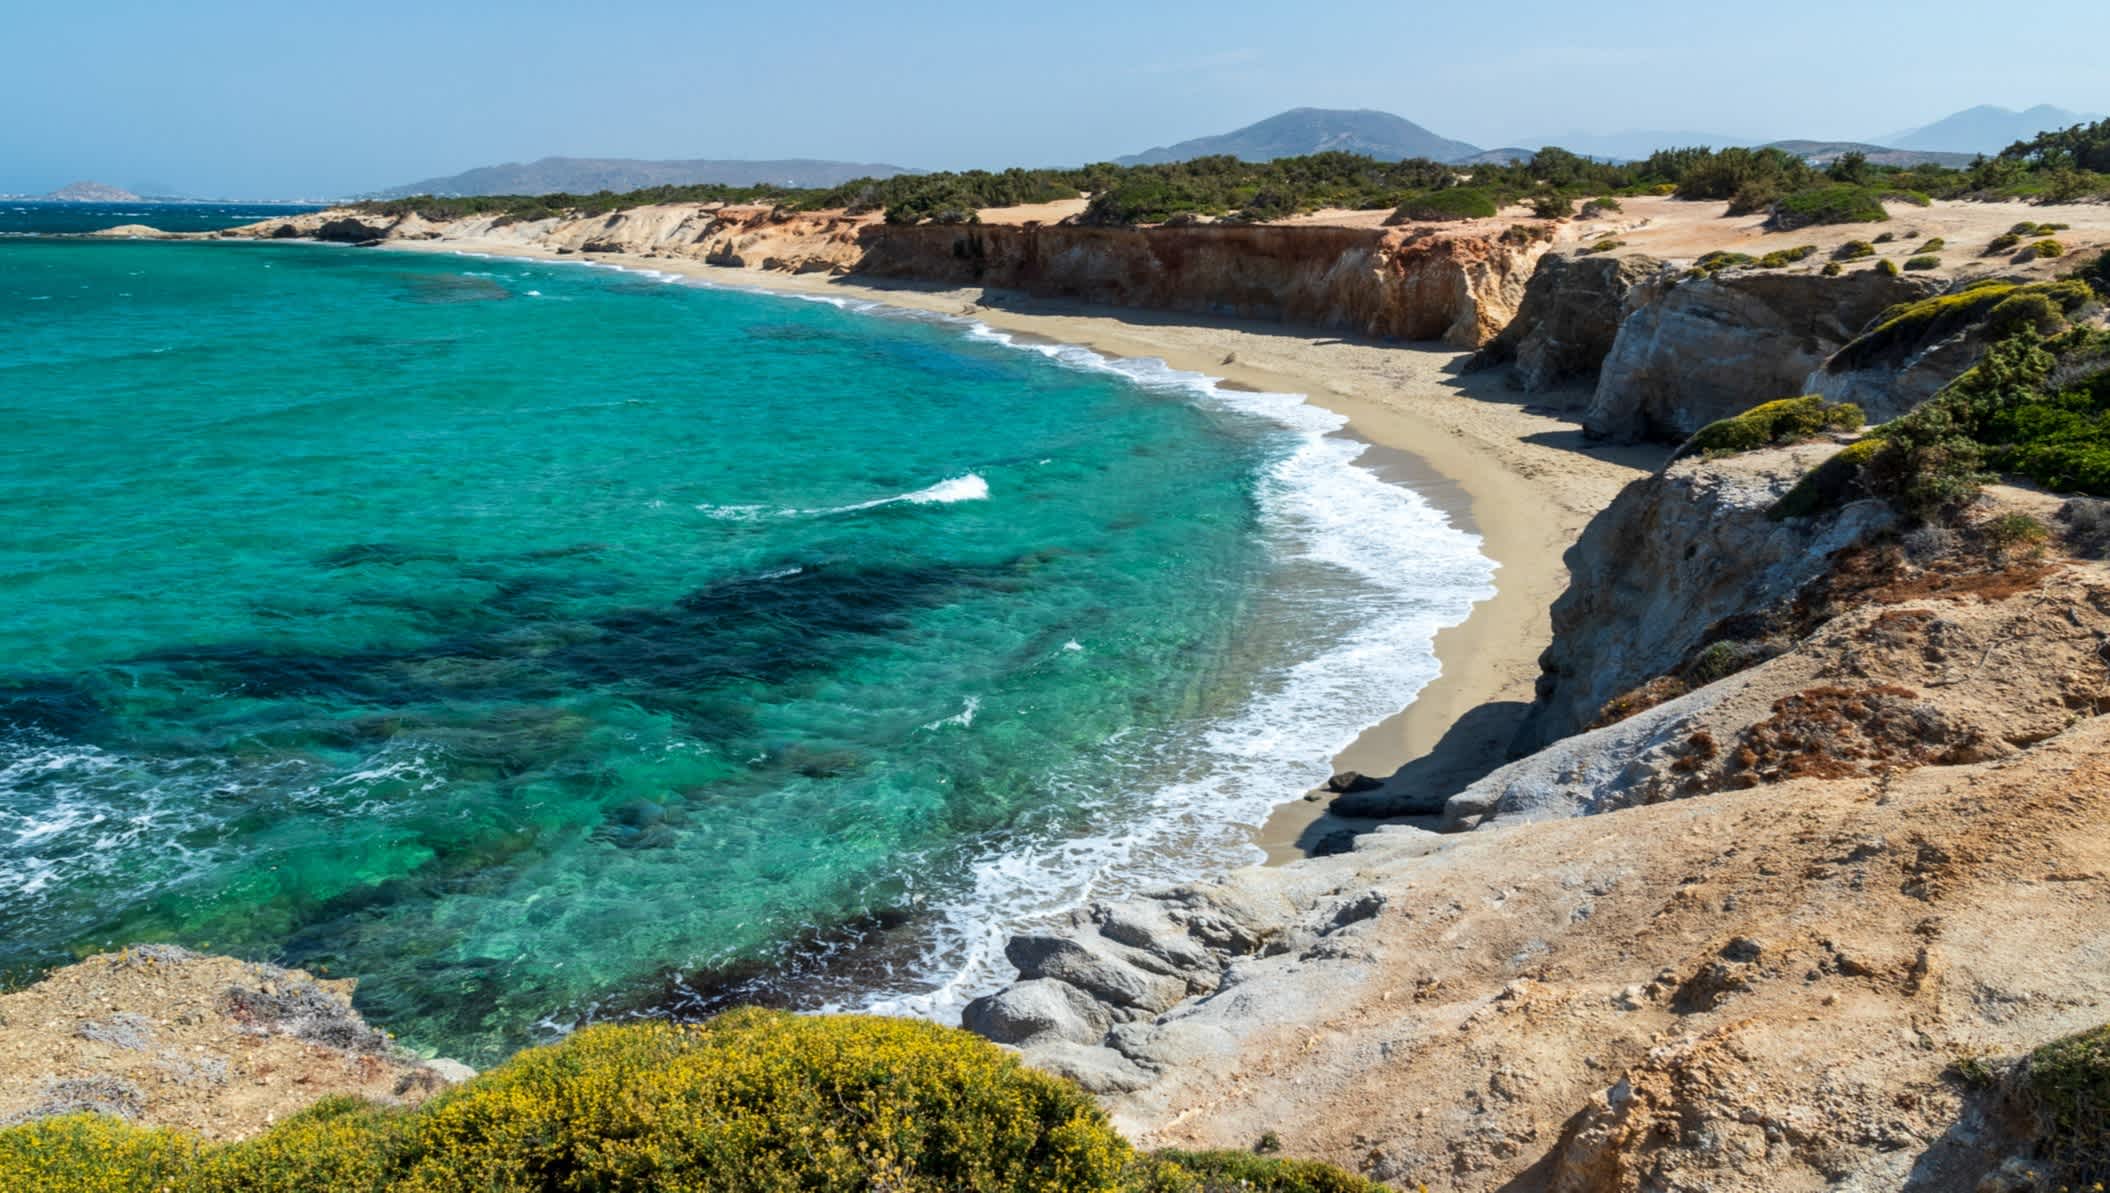 Blick auf den Sandstrand Paralia Hawaii in Naxos, Griechenland, umgeben von Felsen und türkisblauem Wasser.